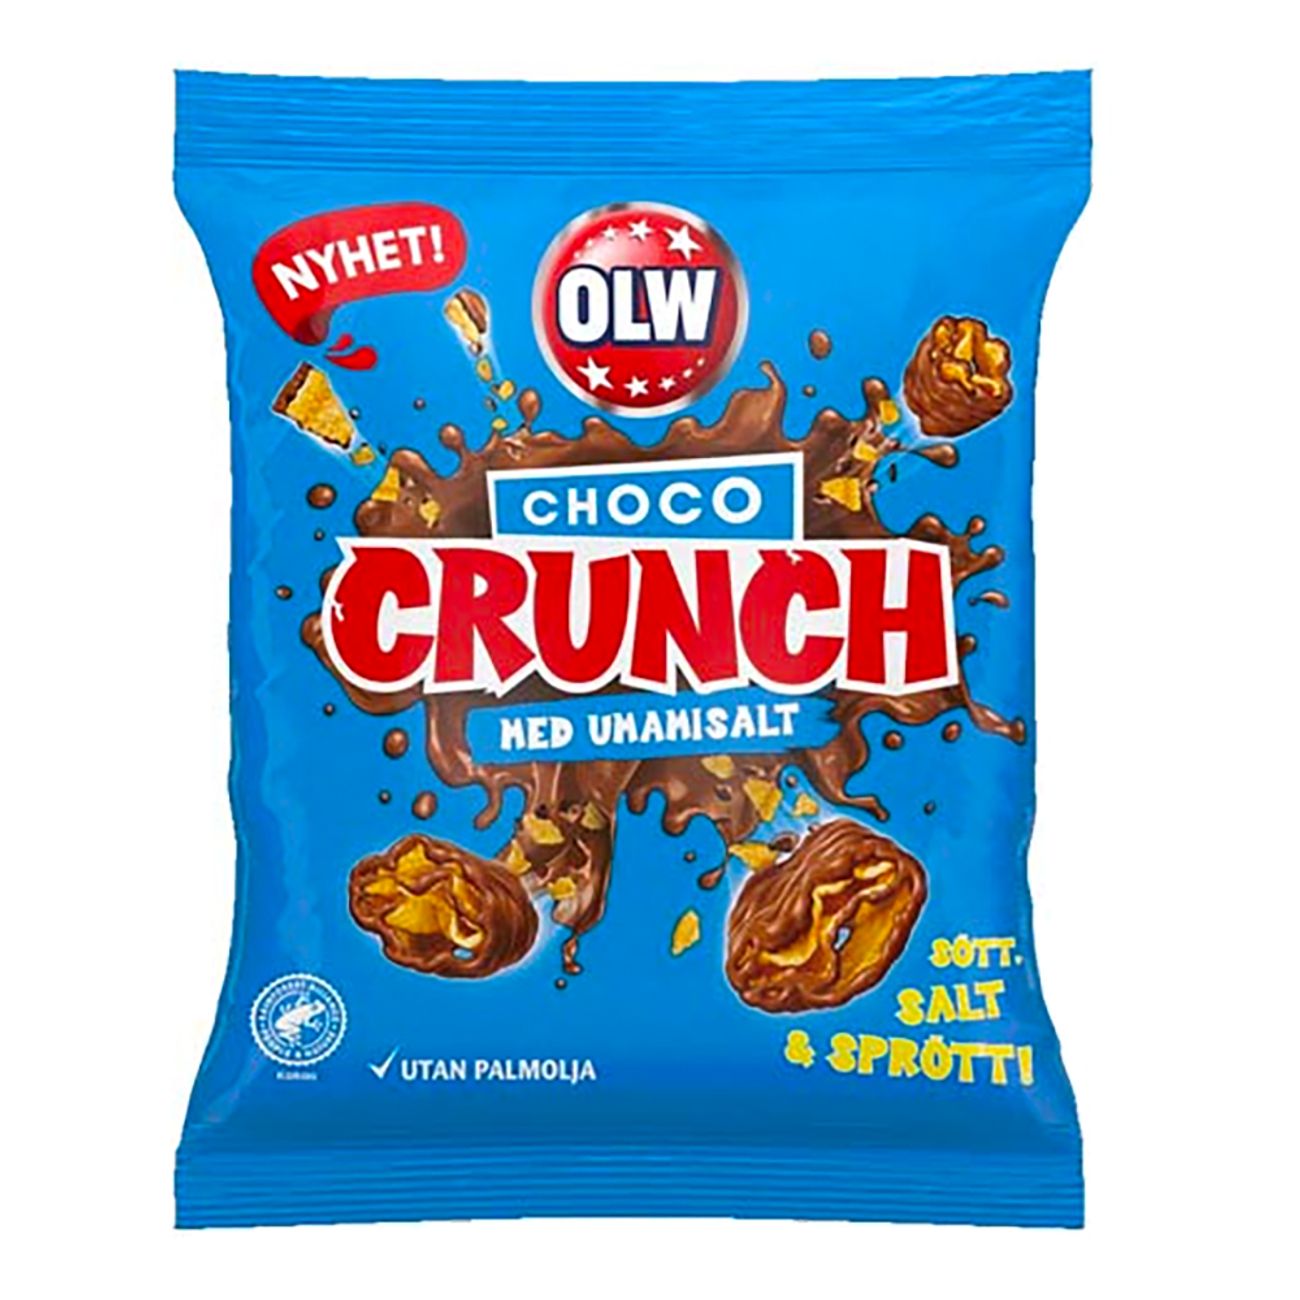 olw-choco-crunch-84895-1